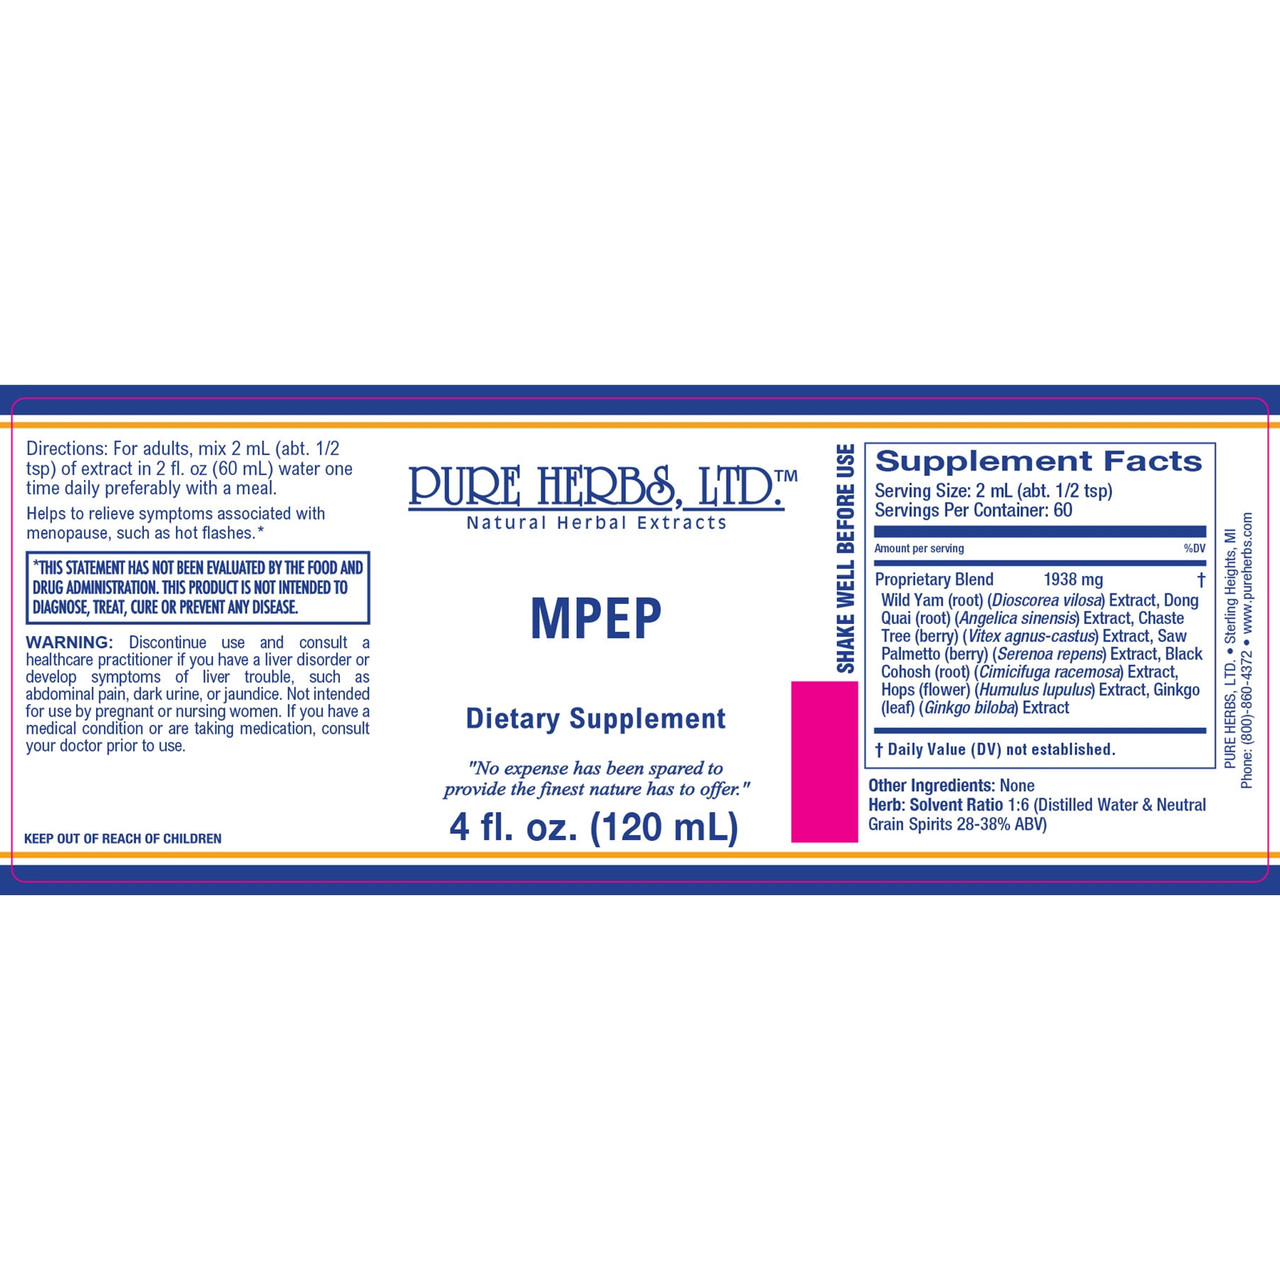 Pure Herbs, Ltd. MPEP (4 oz.)